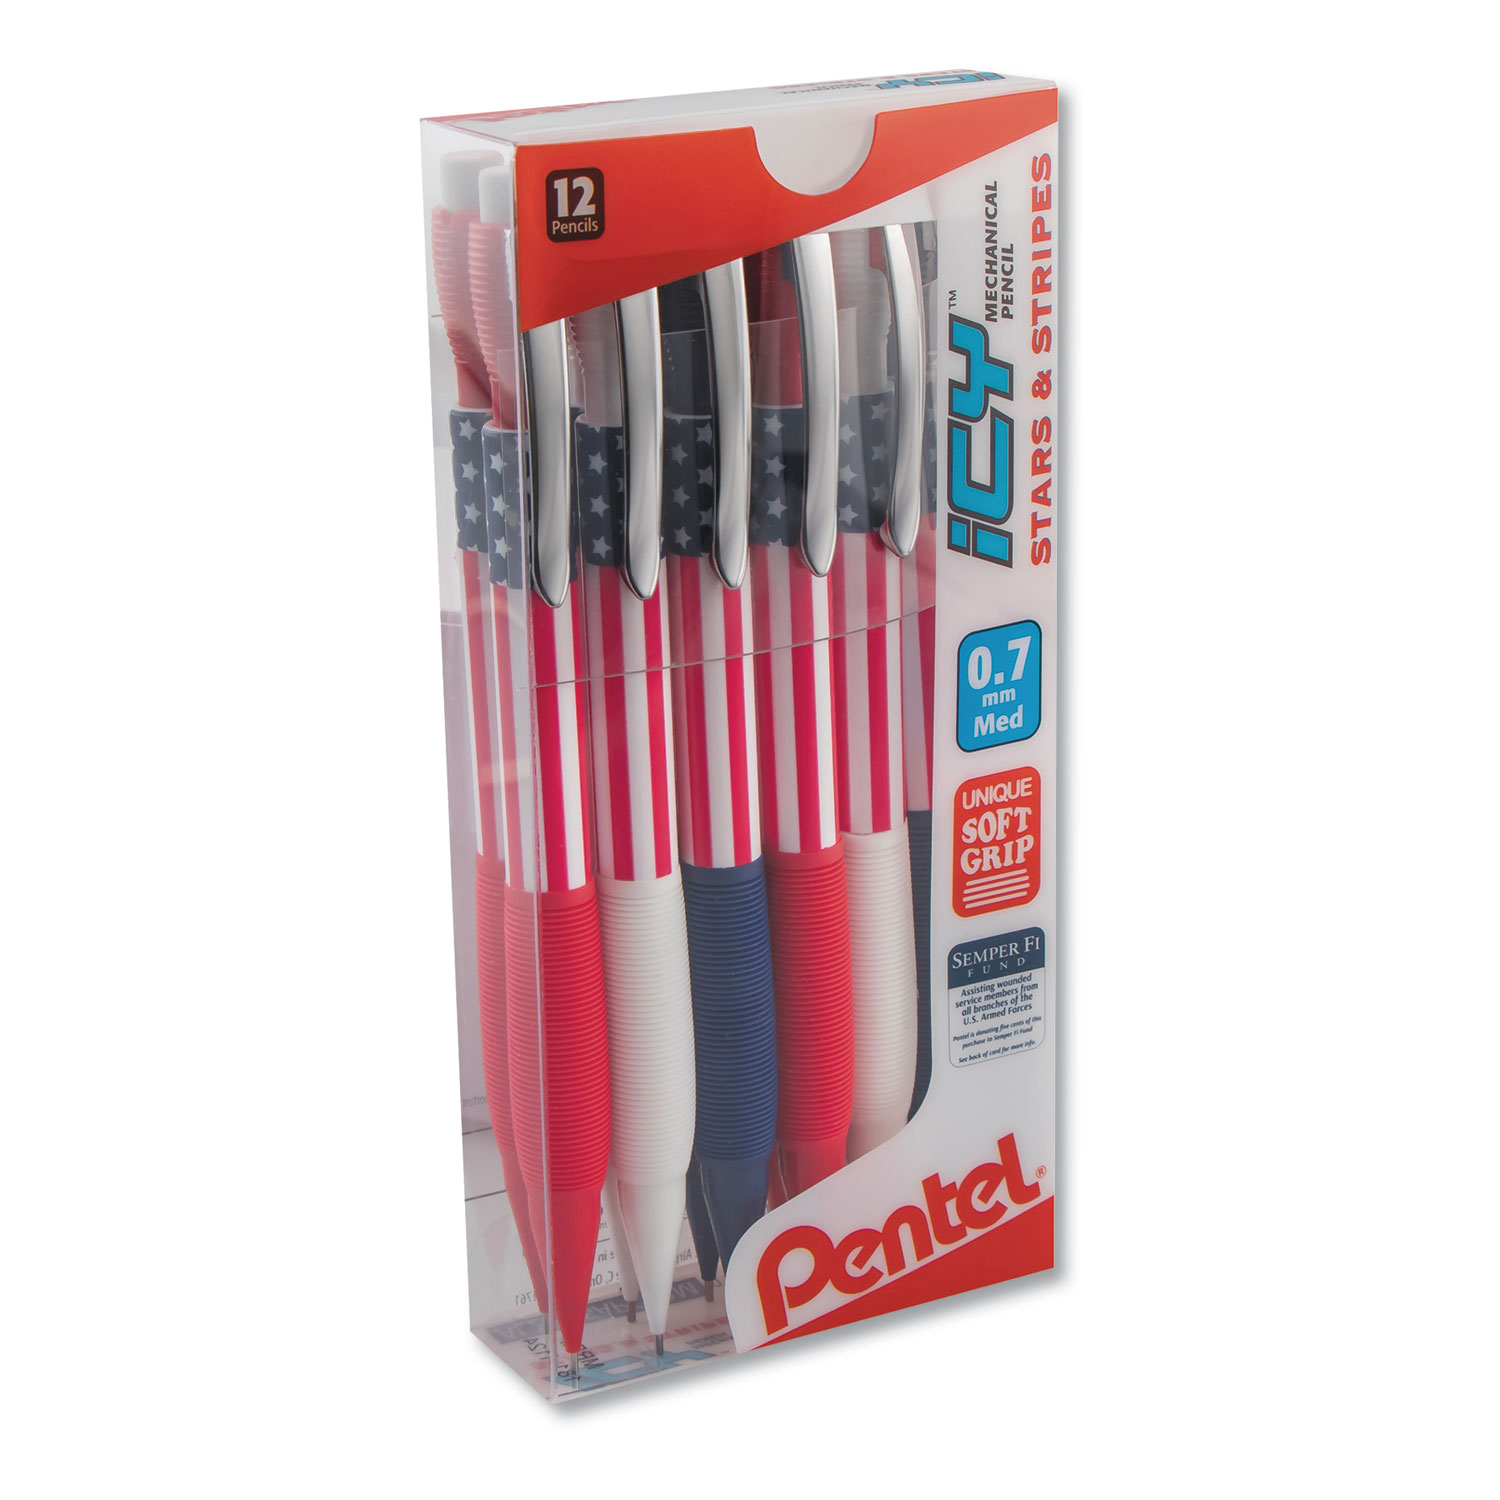  Pentel AL27USAPC12M Icy Mechanical Pencil, 0.7 mm, HB (#2.5), Black Lead, Blue/Red/White Barrel, Dozen (PENAL27USAPC12M) 